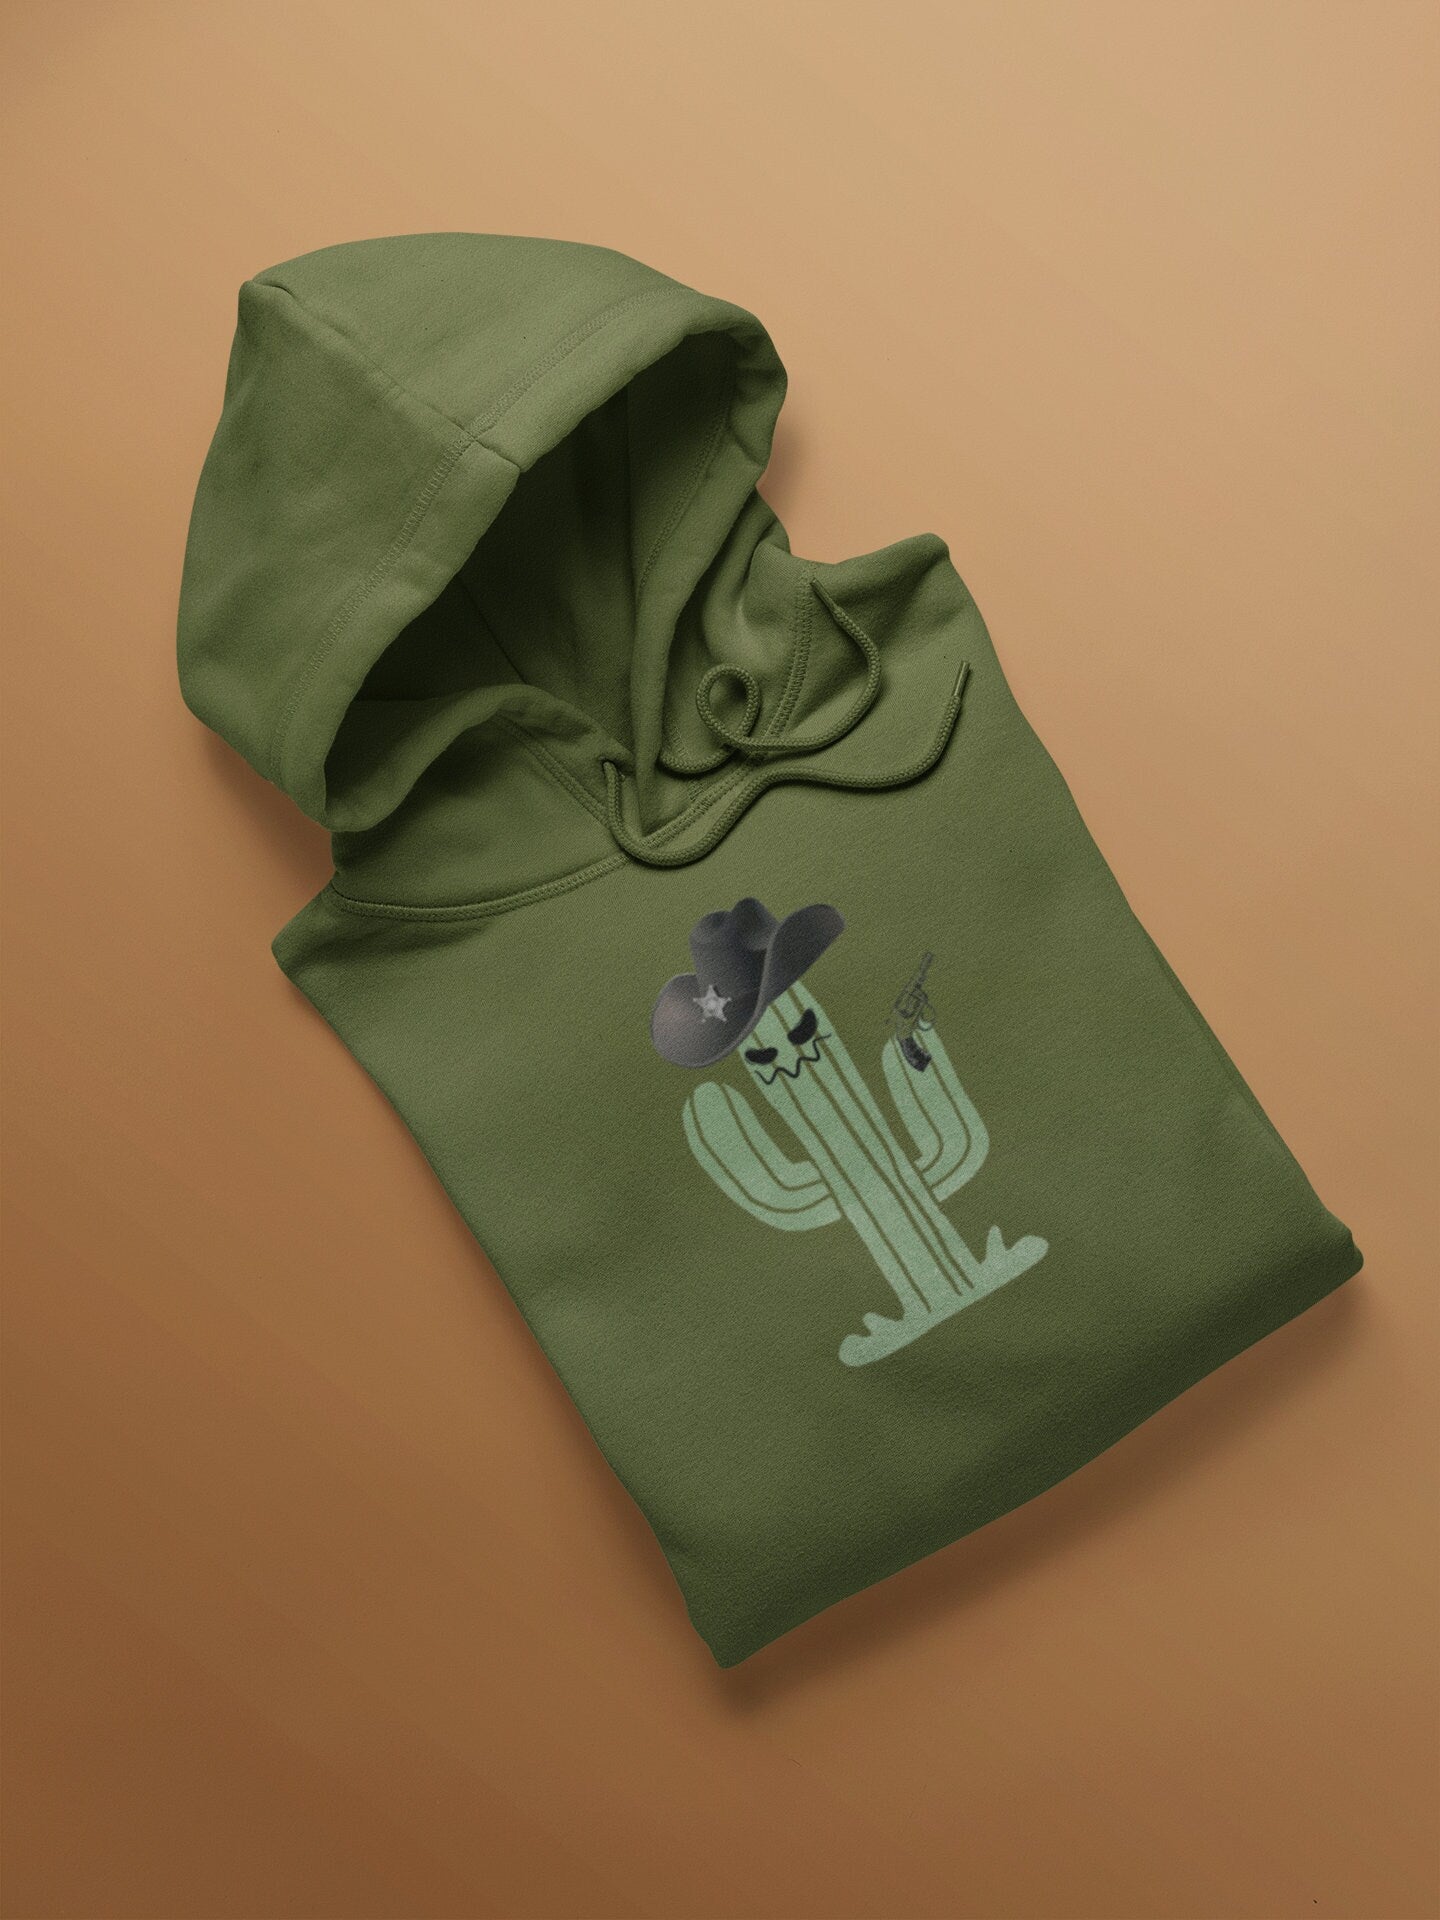 Unisex Heavy Blend Hooded Sweatshirt Cowboy Cactus Graphic Hoodie Halloween Shirt Western Funny Men's Fall Winter Hoodie